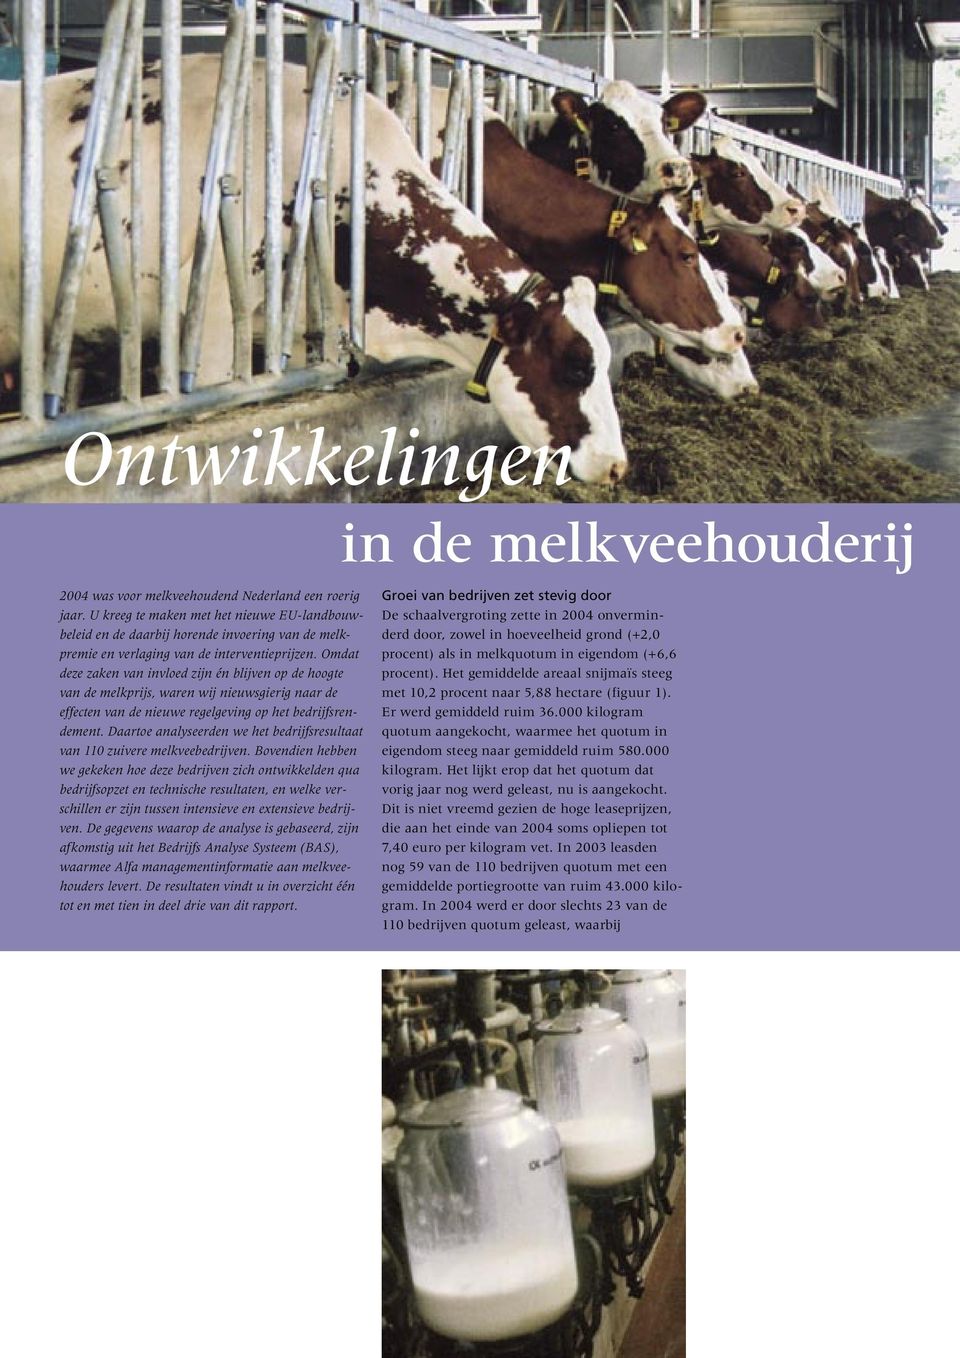 Omdat deze zaken van invloed zijn én blijven op de hoogte van de melkprijs, waren wij nieuwsgierig naar de effecten van de nieuwe regelgeving op het bedrijfsrendement.